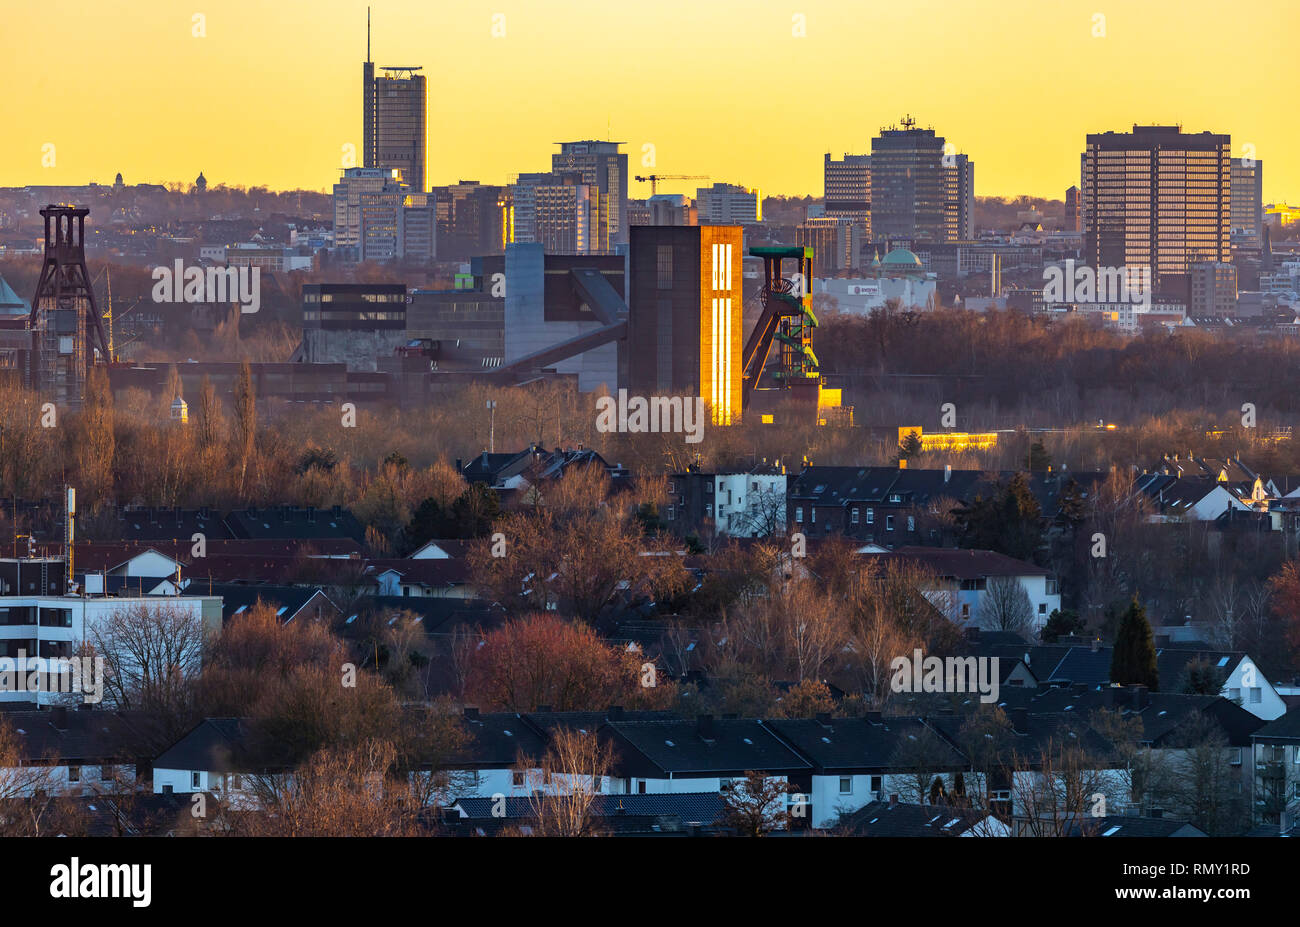 Skyline di Essen, Germania, anteriore la Zollverein colliery, Sito del Patrimonio Mondiale, dietro di esso i grattacieli del centro della città, con il municipio, destra Foto Stock